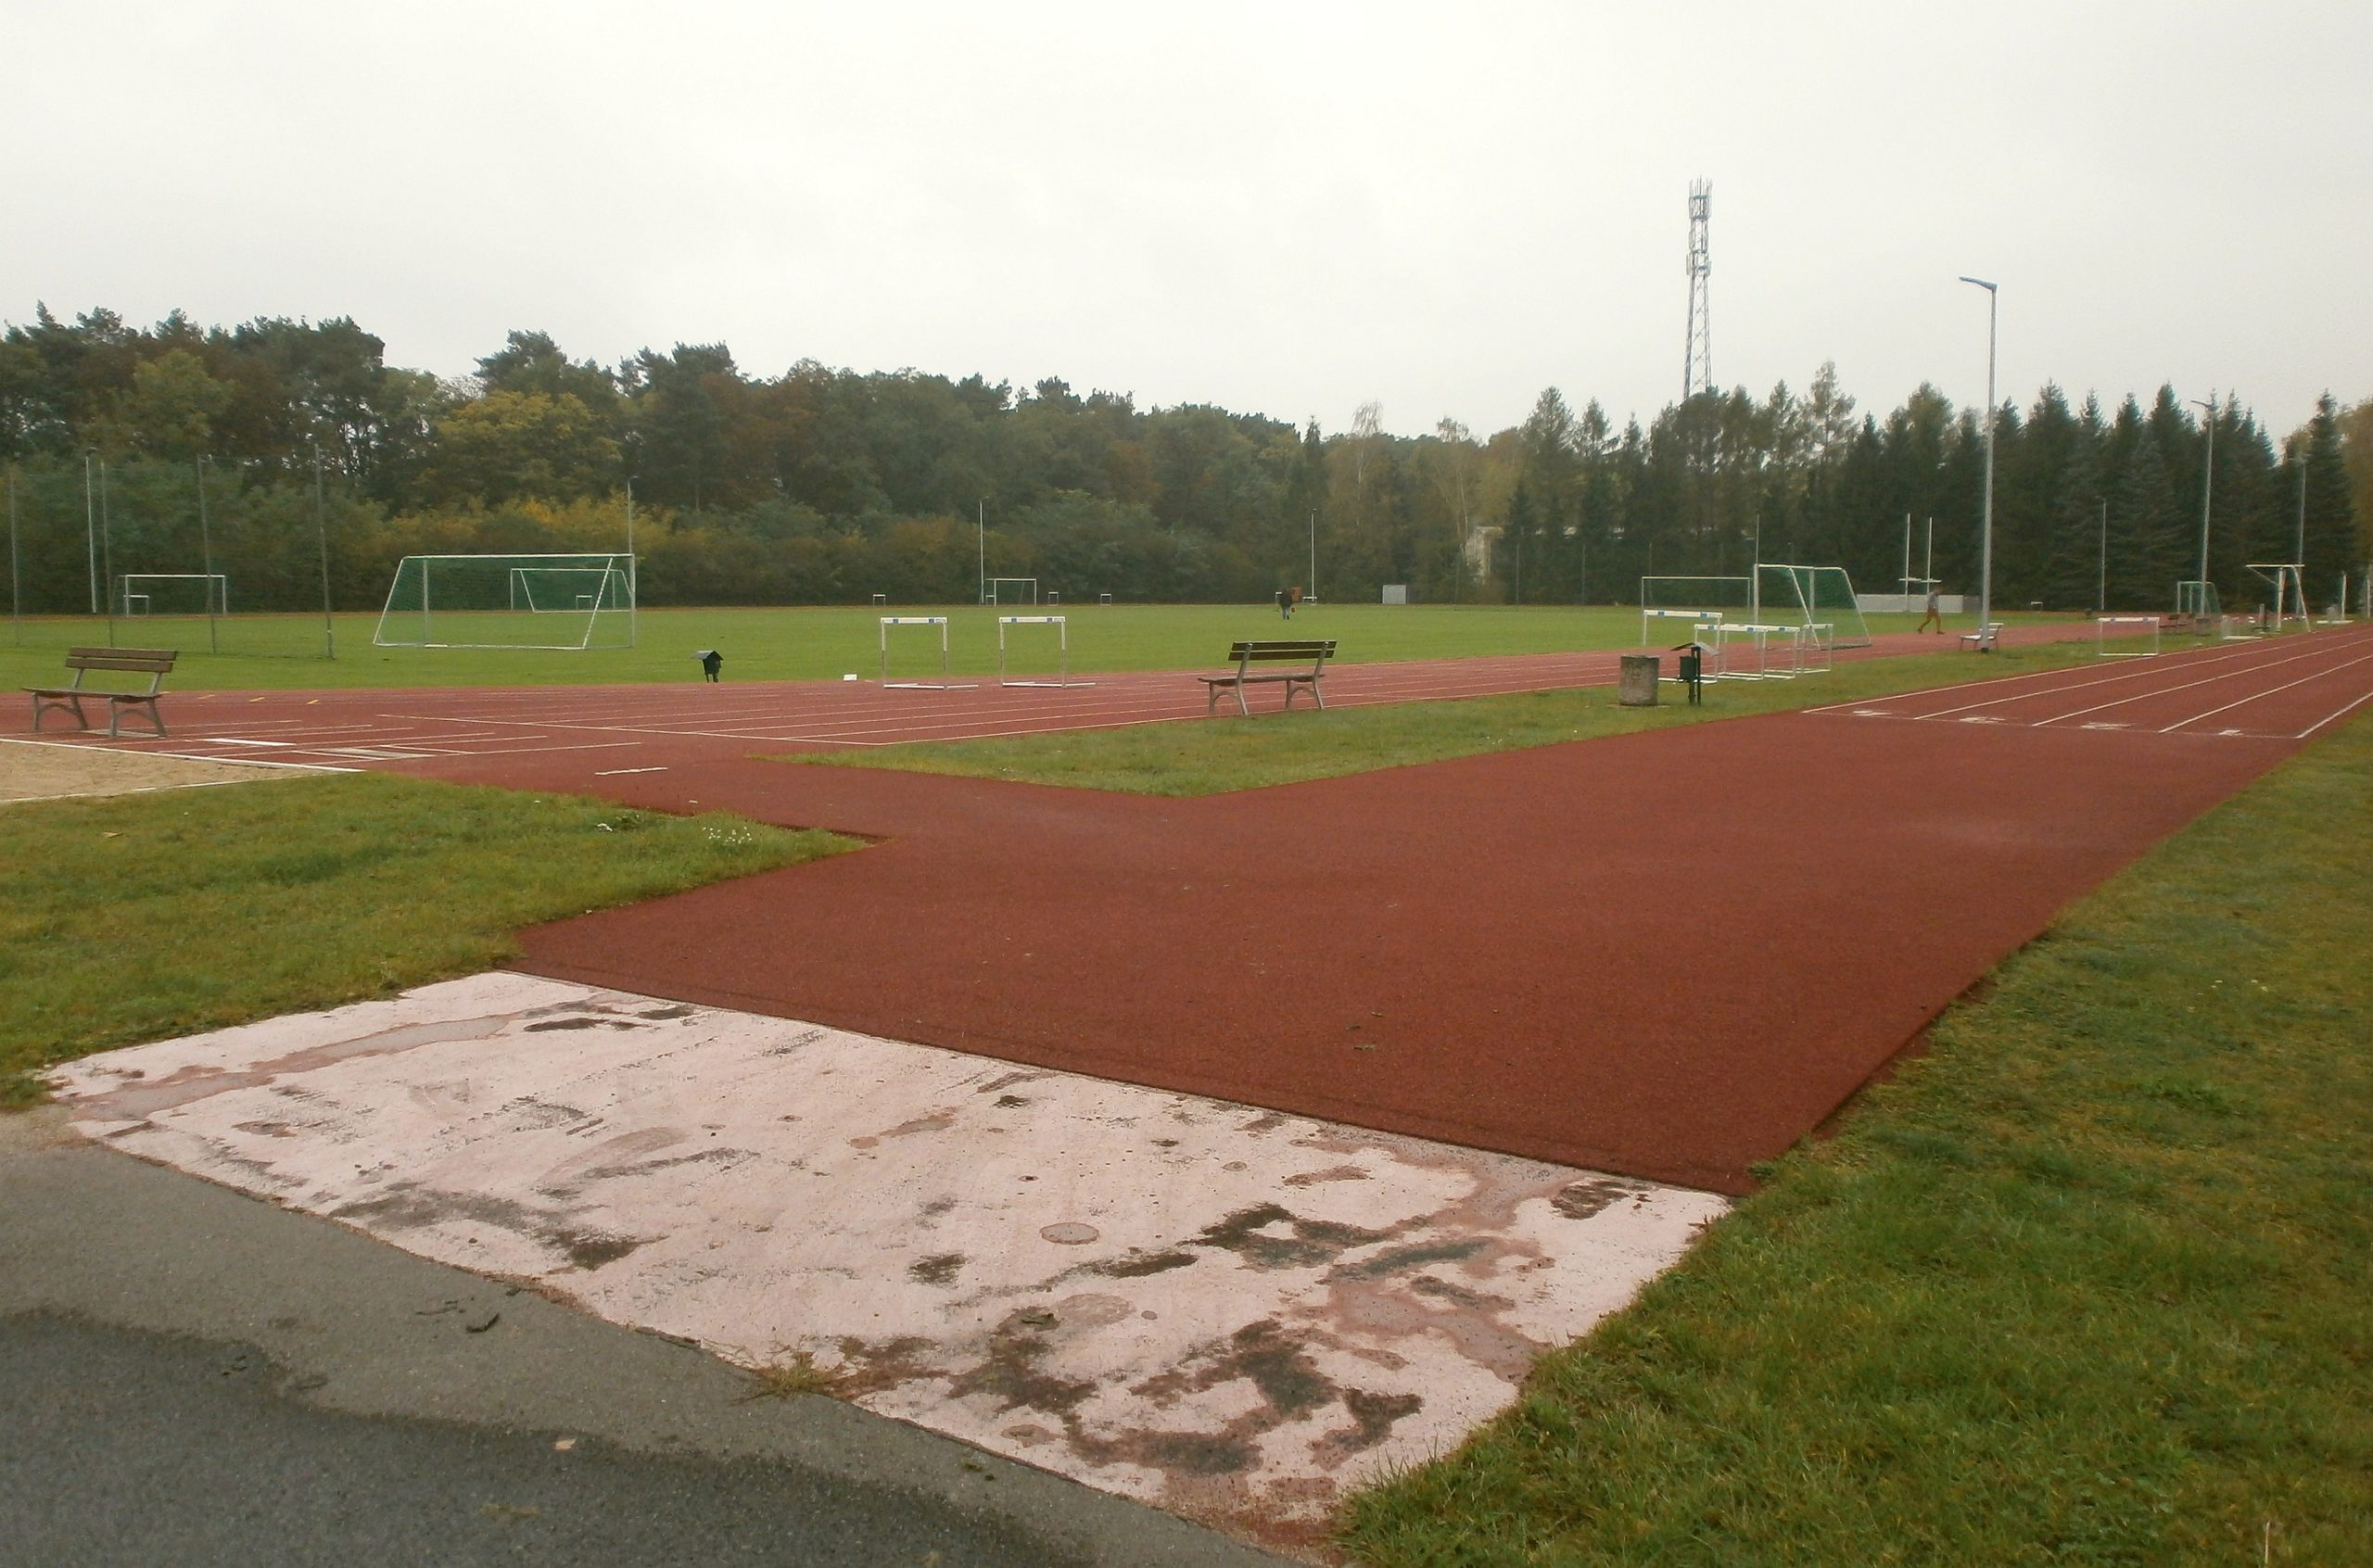 Sportschule Kienbaum